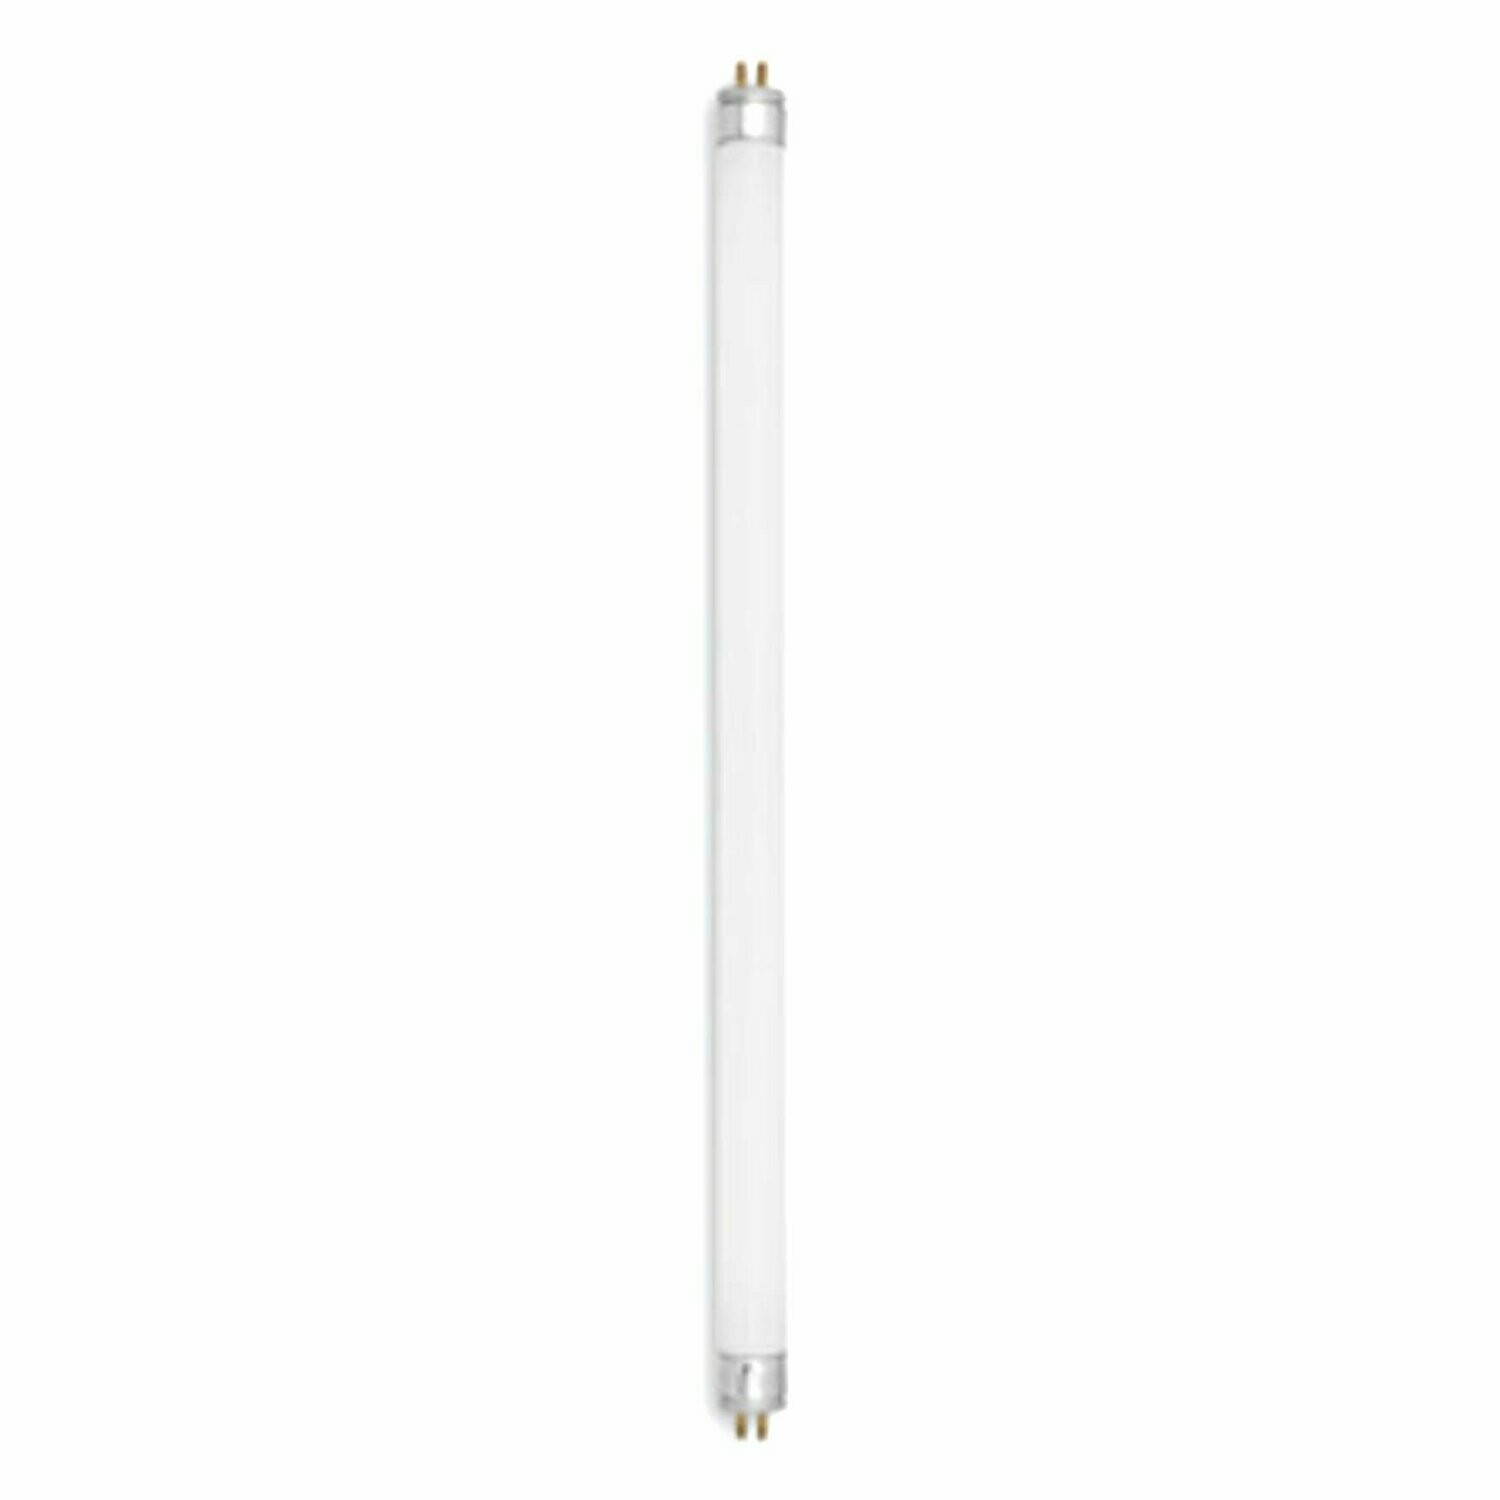 Leuchtstoffröhre Leuchtstofflampe 10W G13 LF640 universal weiß 33cm Neonröhre